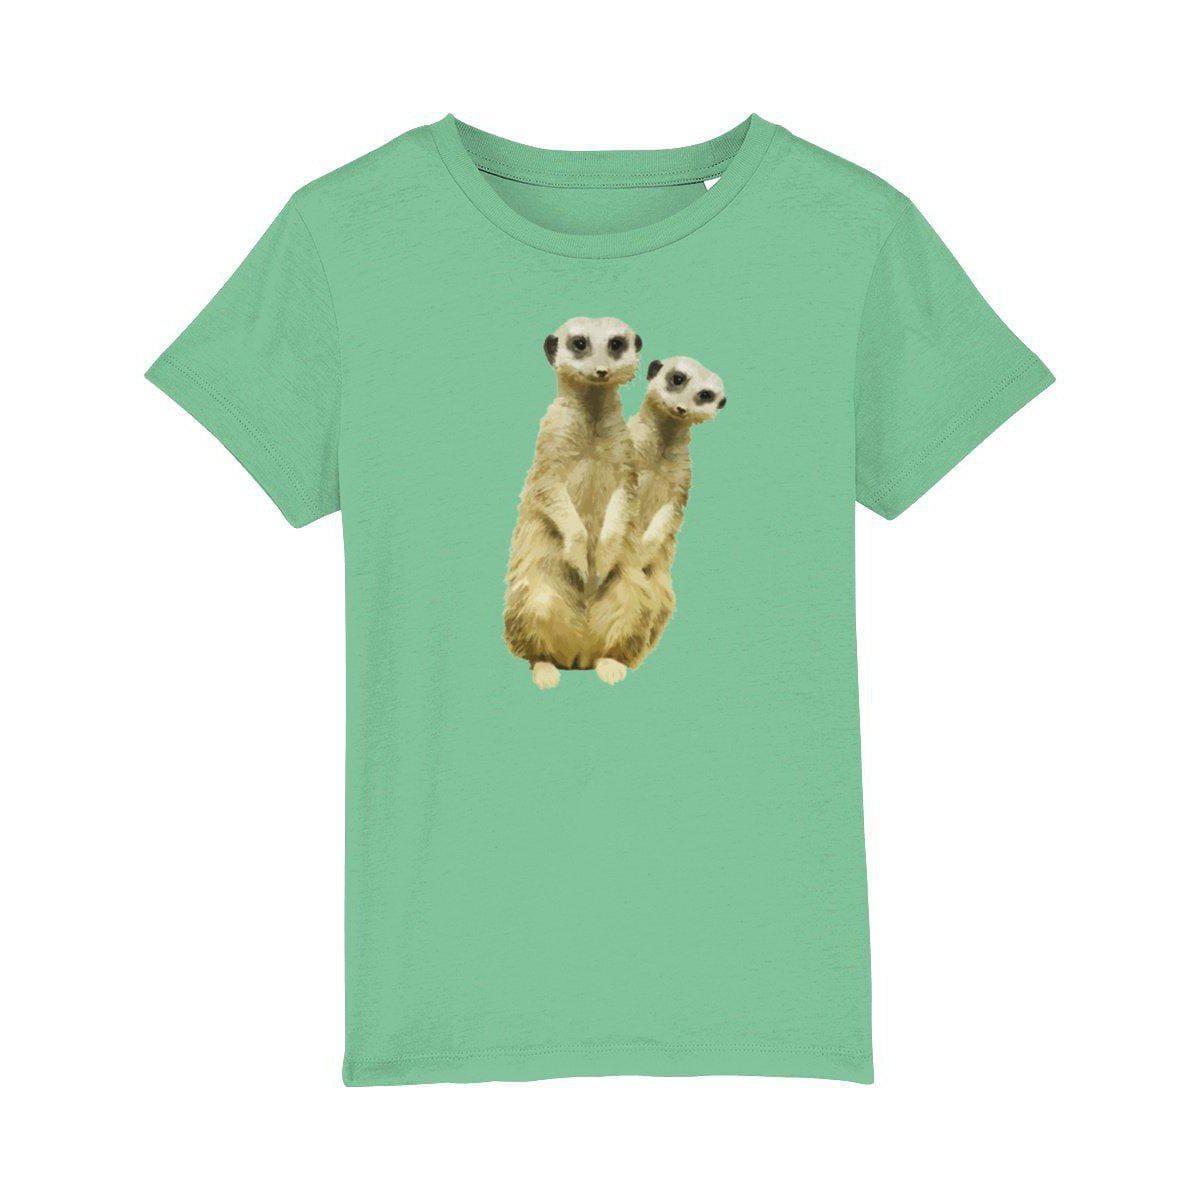 Kid's Meerkat T-shirt